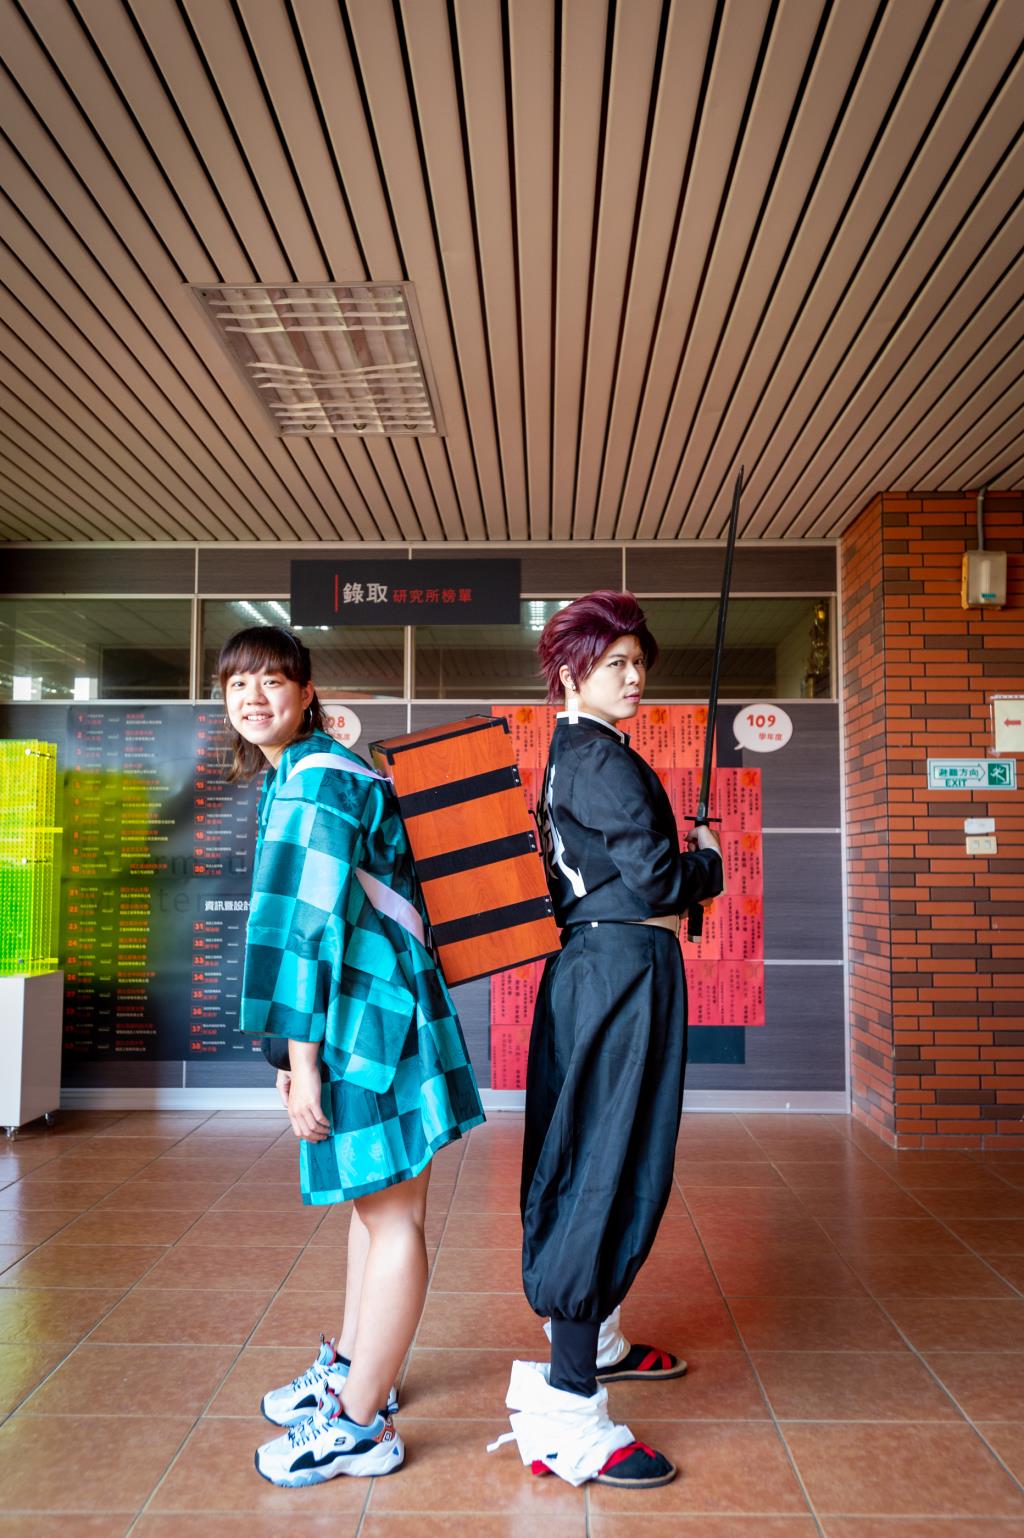 體驗「注連繩」及「cosplay」文化 國際處舉辦日本文化講座